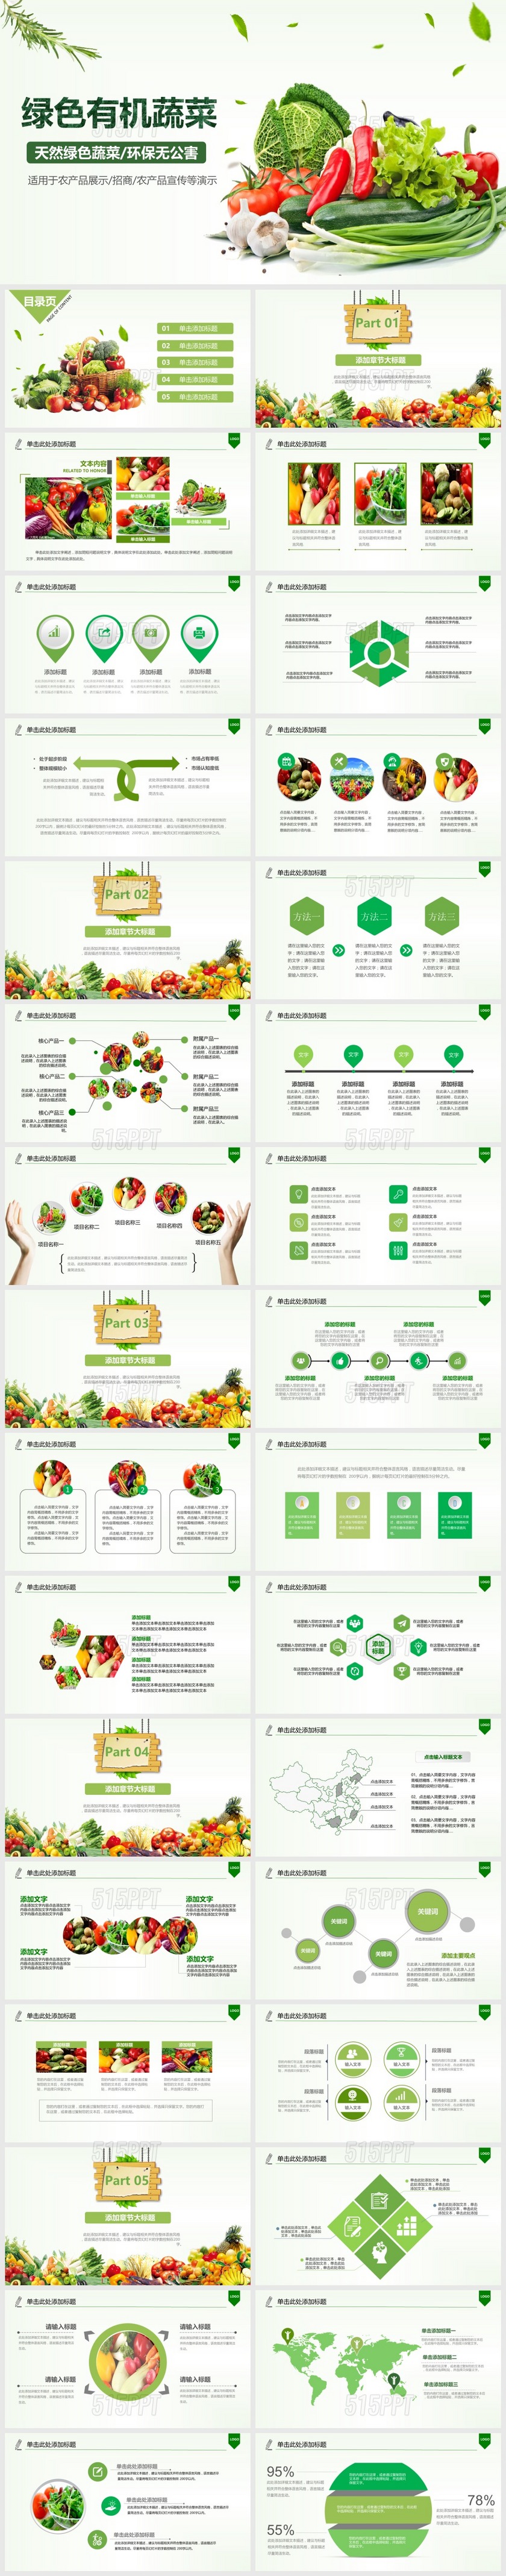 绿色有机蔬菜农产品展示招商宣传PPT模版